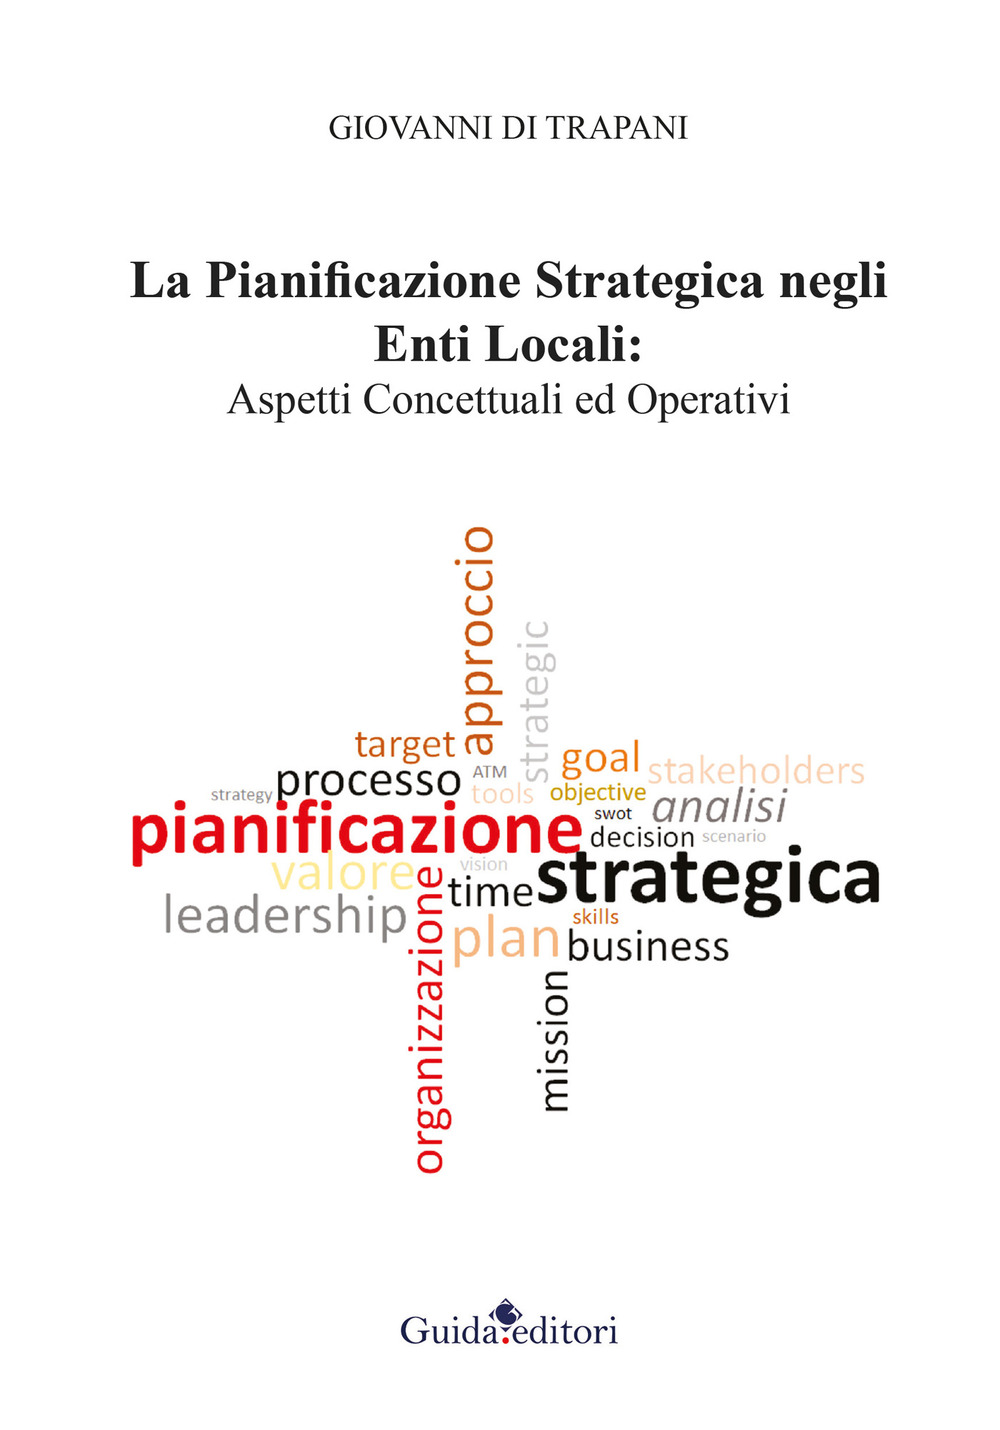 La pianificazione strategica negli enti locali. Aspetti concettuali ed operativi